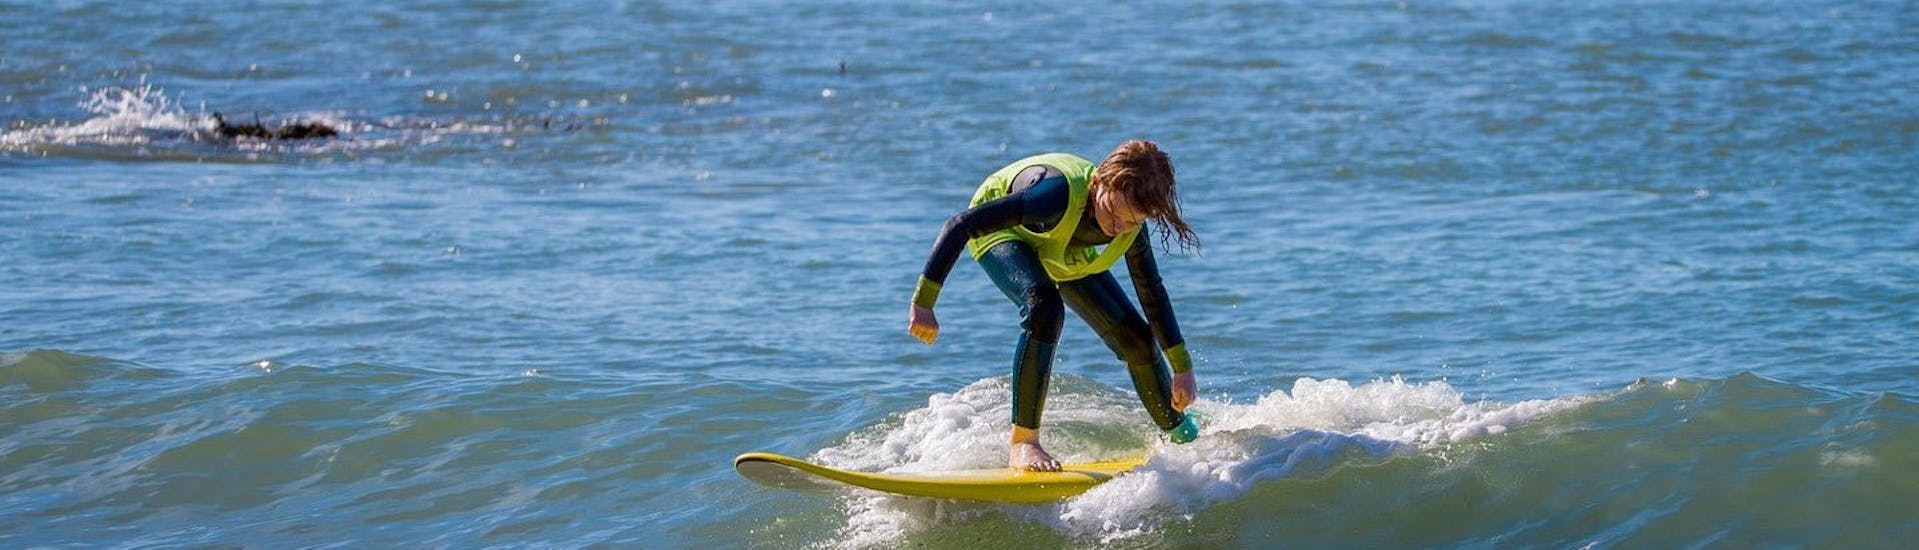 Cours privé de surf à Ericeira (dès 12 ans) pour Tous niveaux.